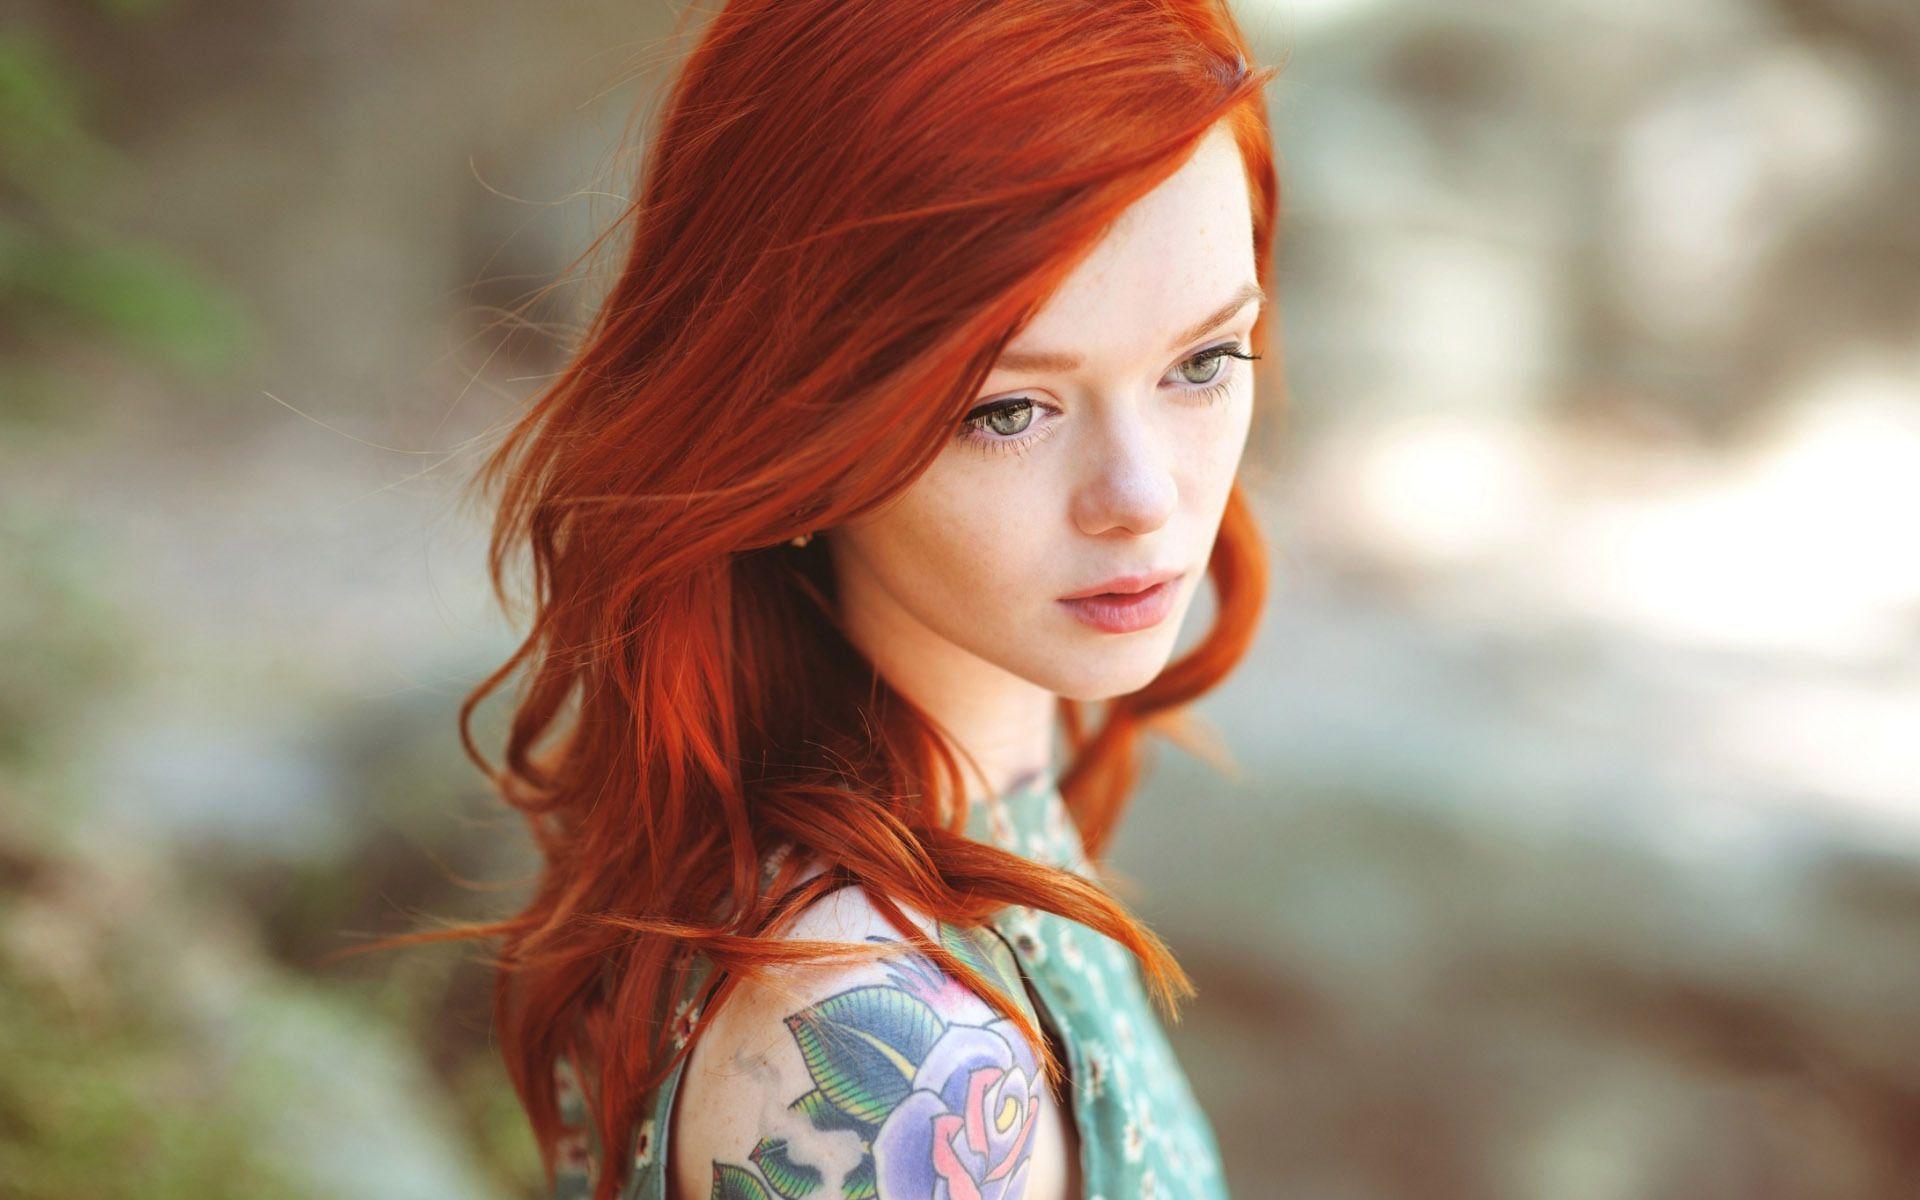 Cute Redhead Girl HD Desktop Wallpaper Widescreen High